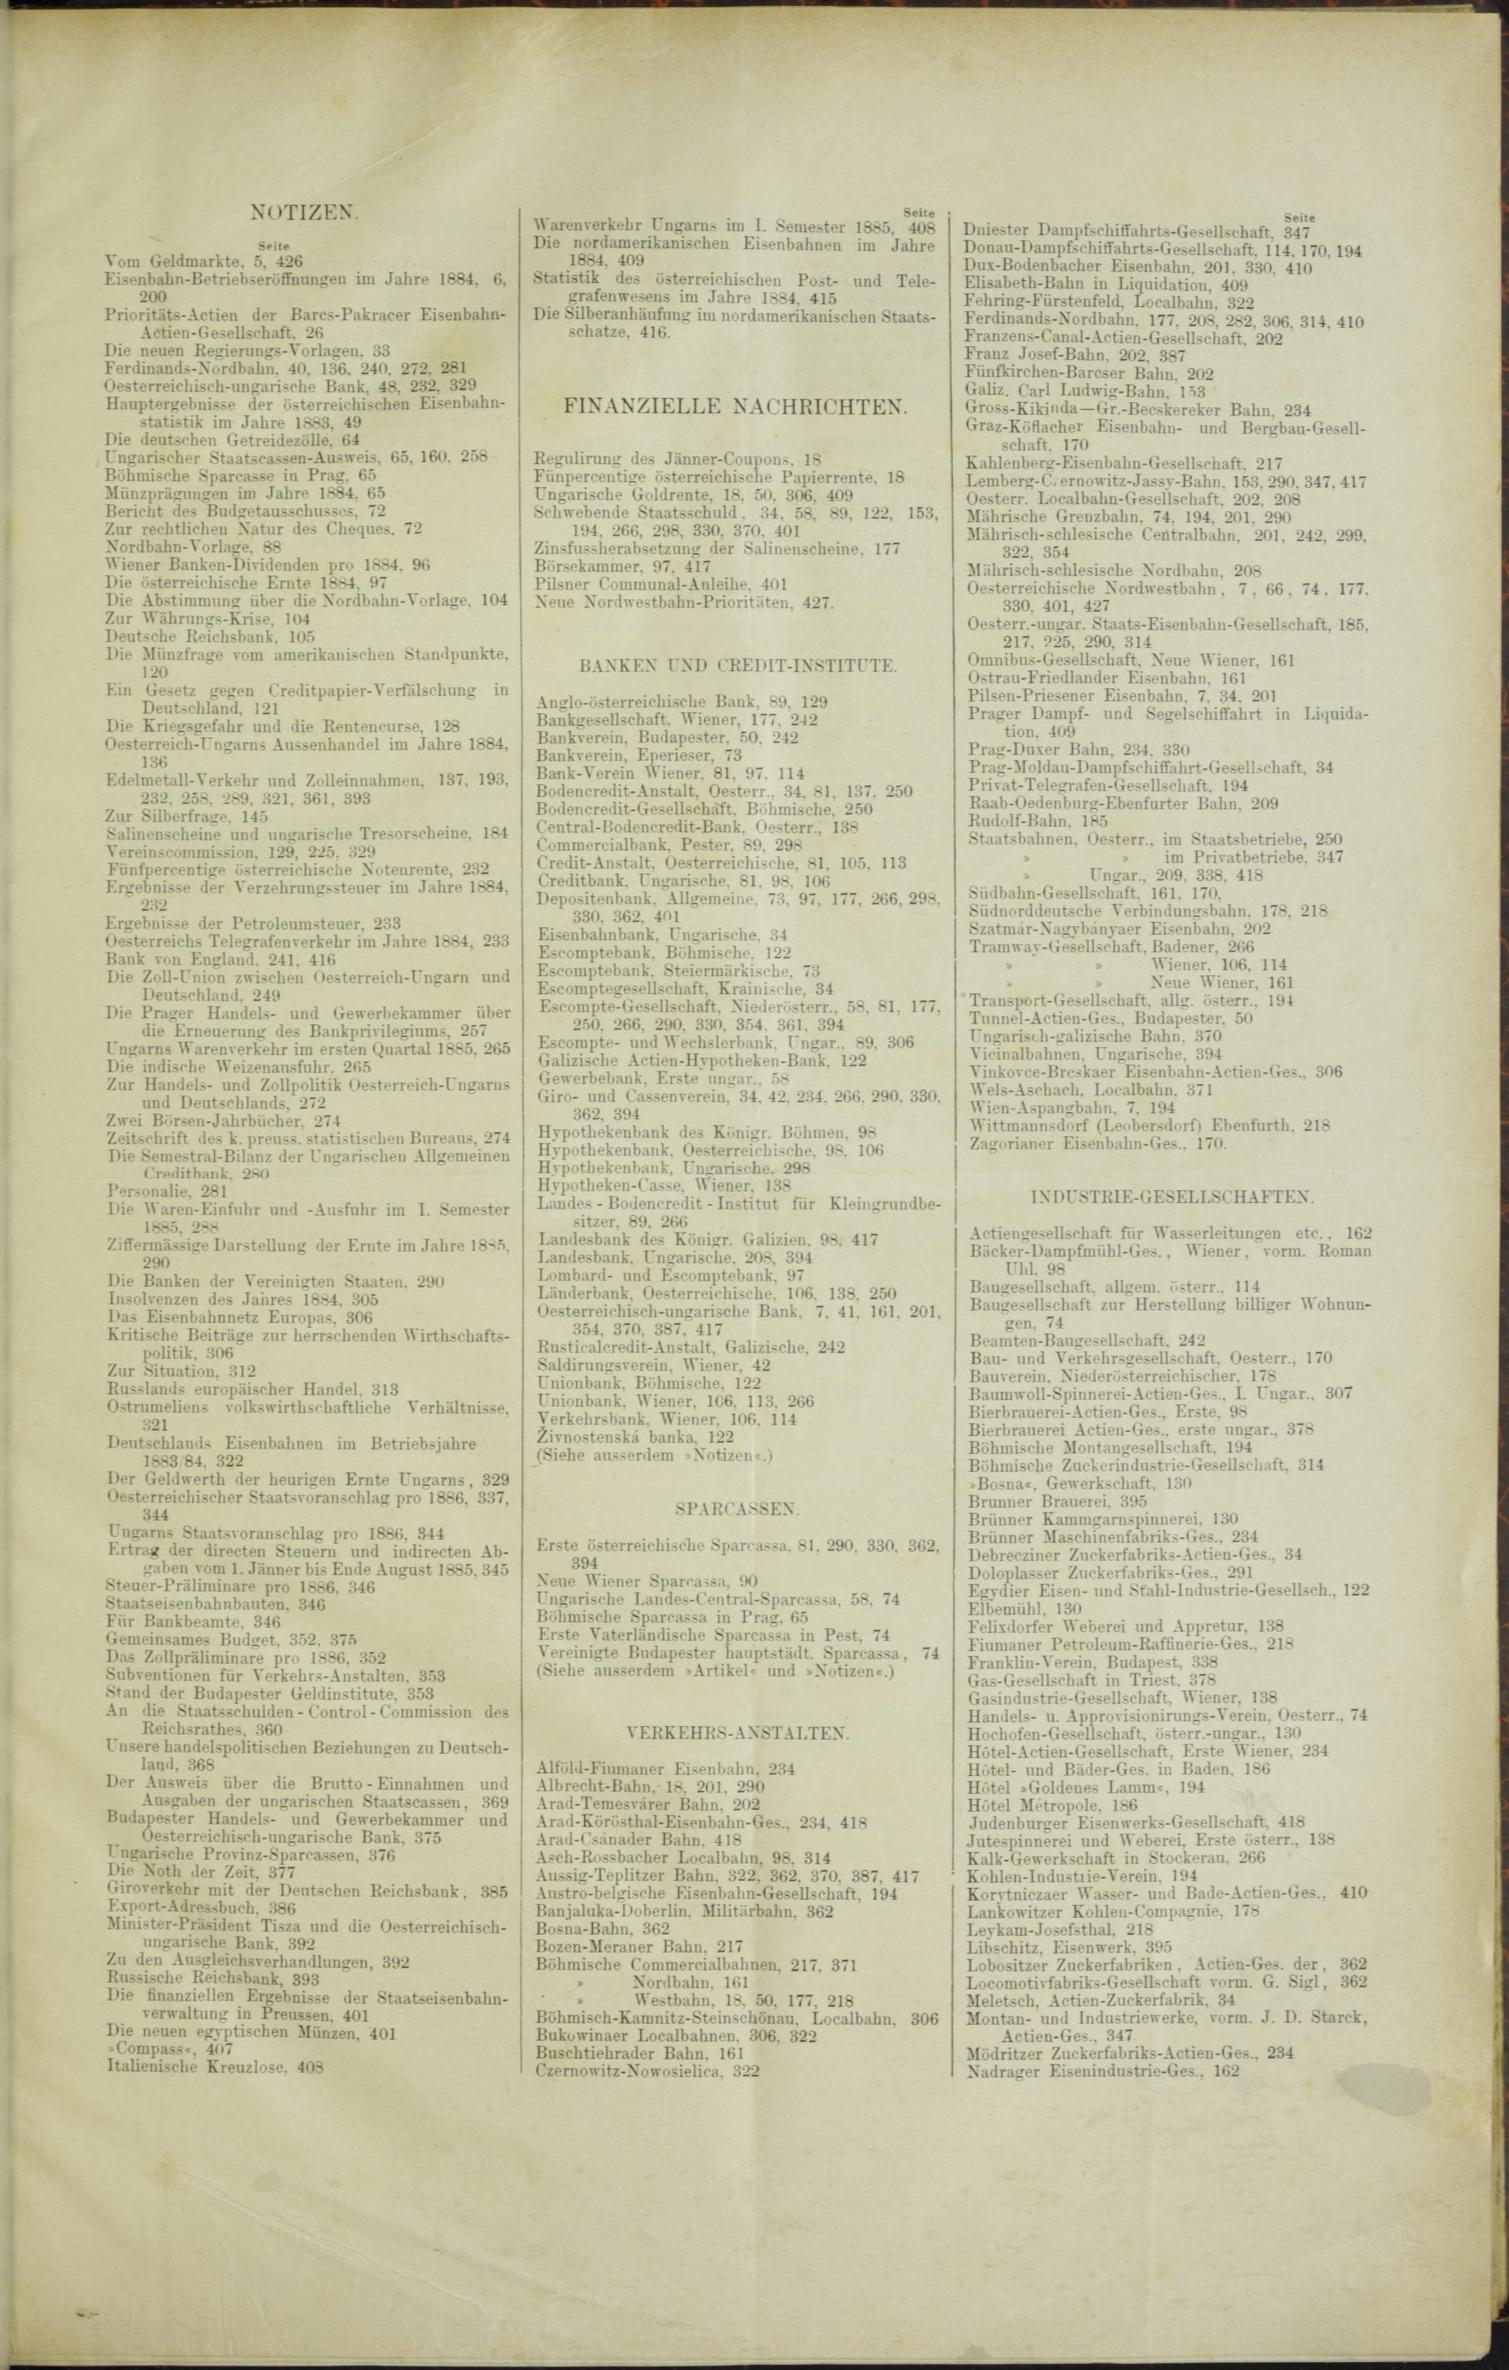 Der Tresor 16.04.1885 - Seite 11